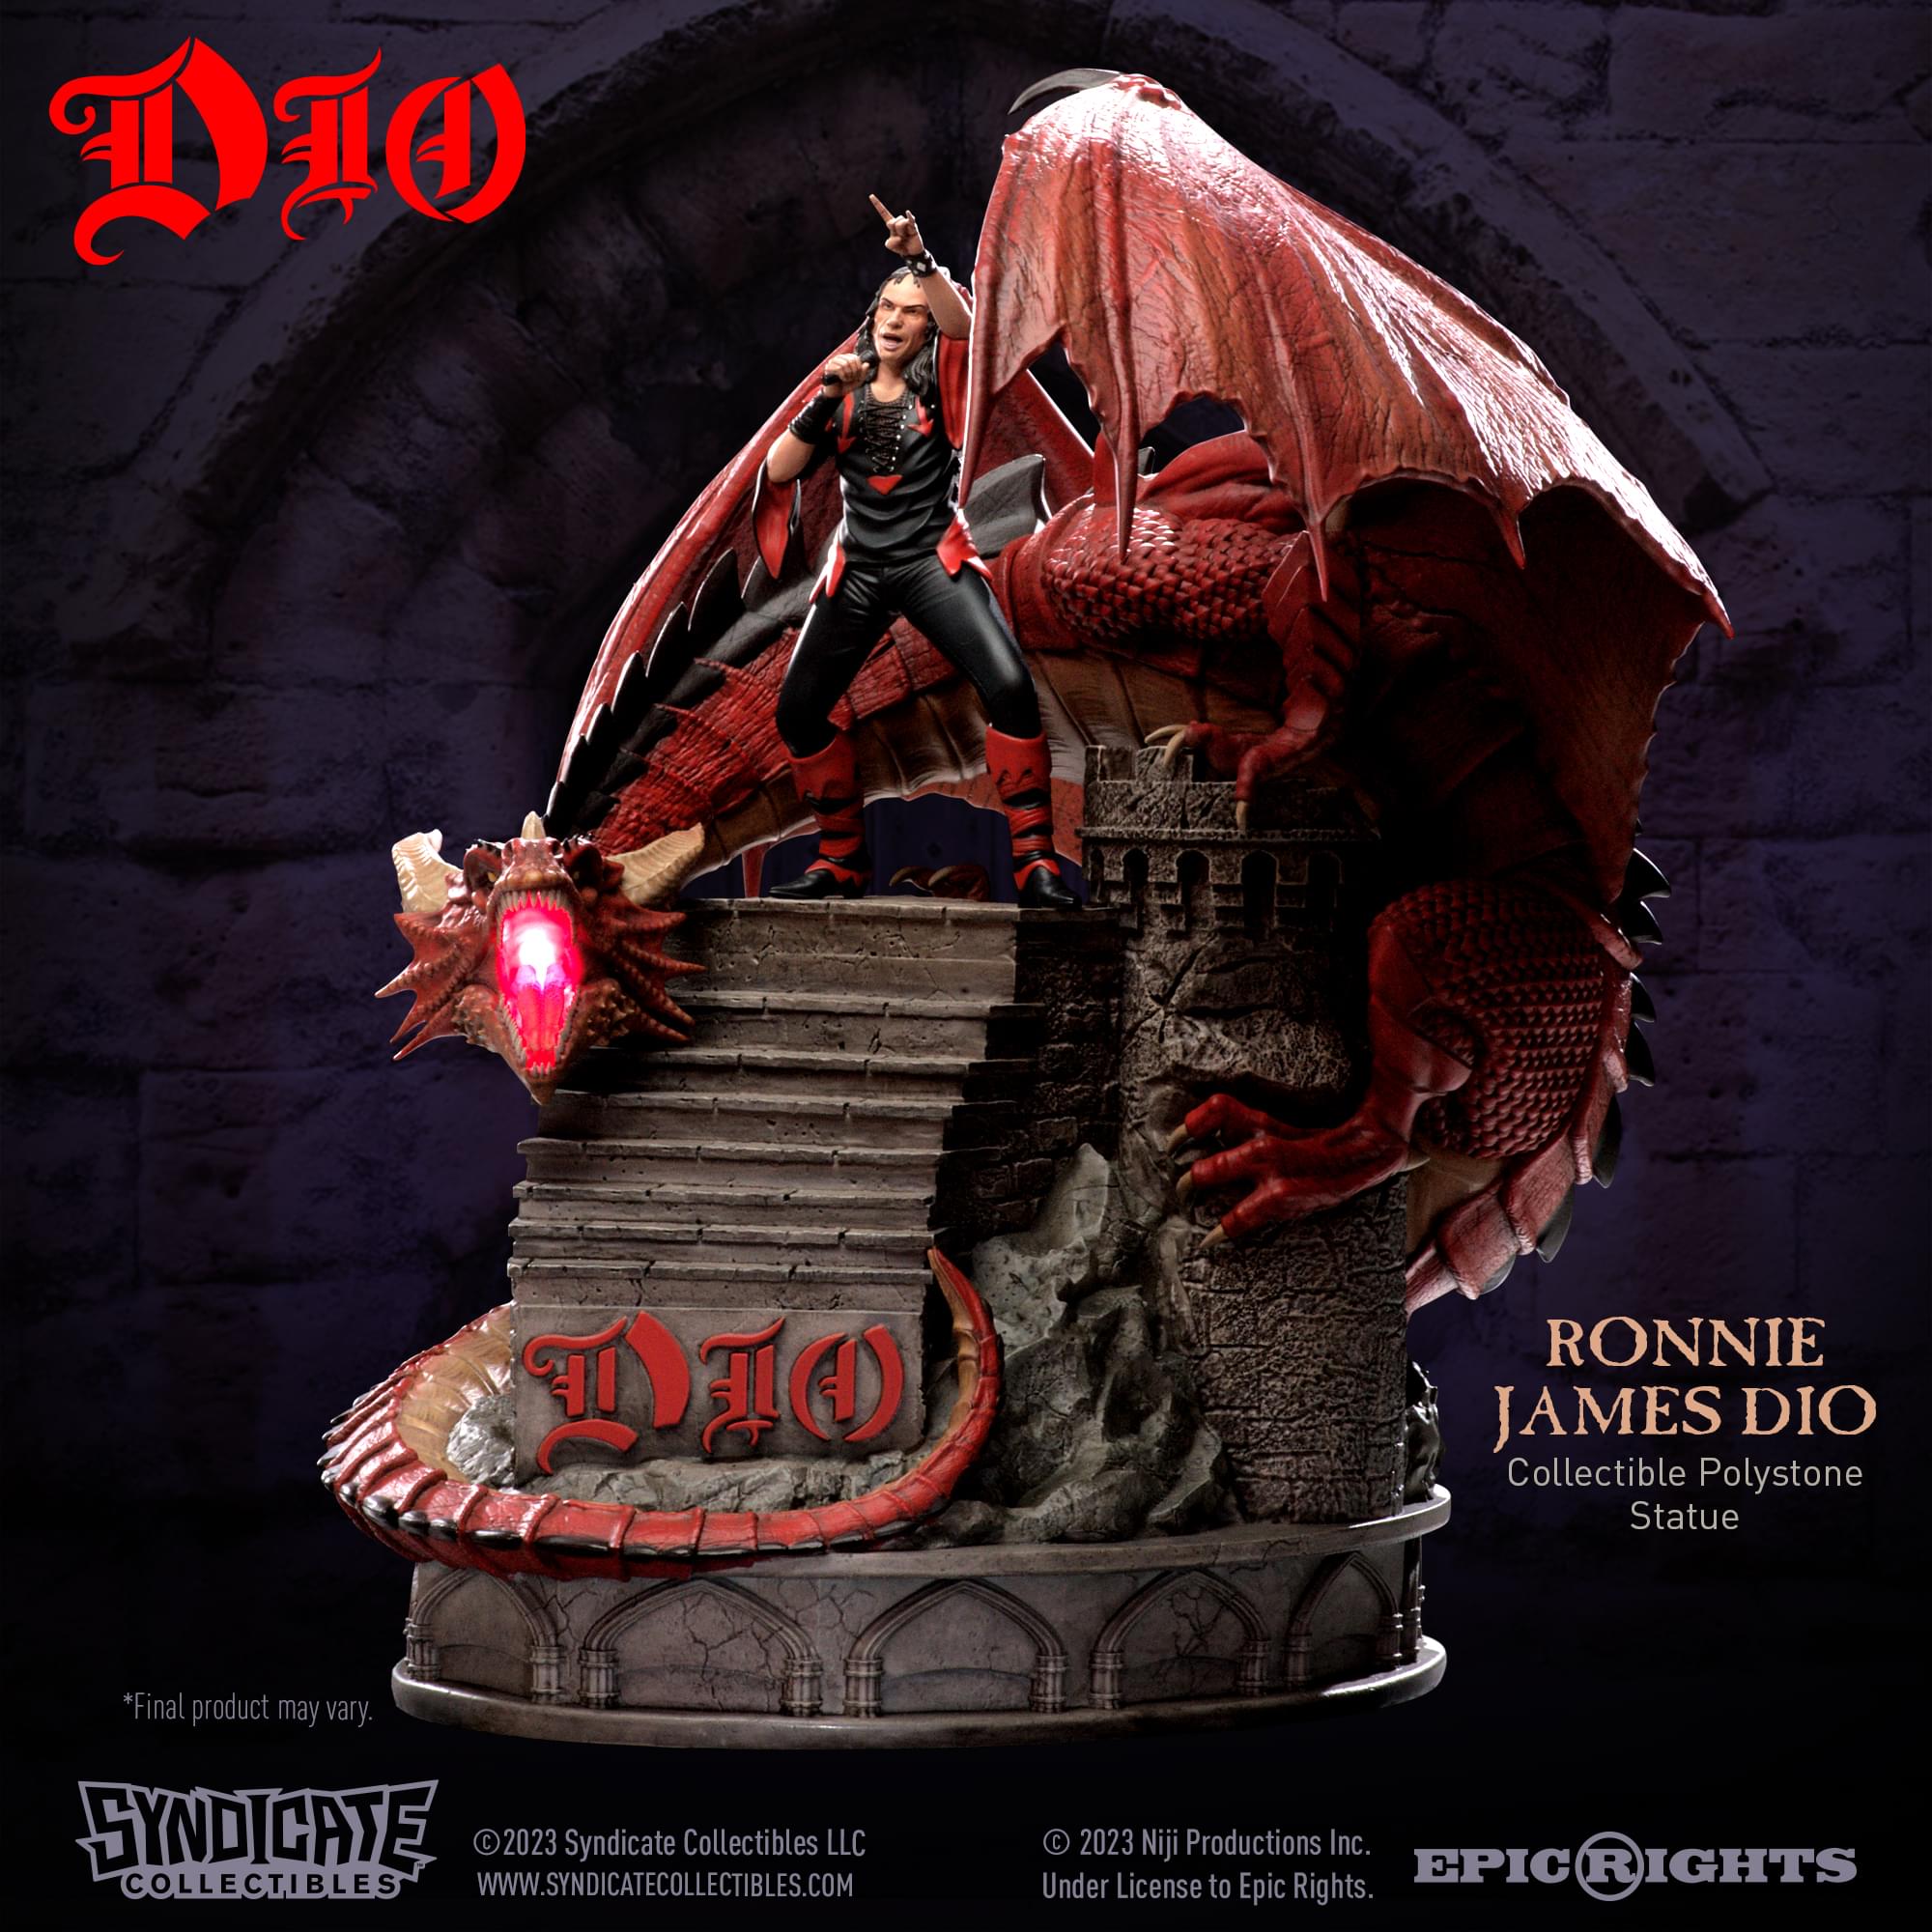 Ronnie James Dio  1:10 Scale Polystone Statue